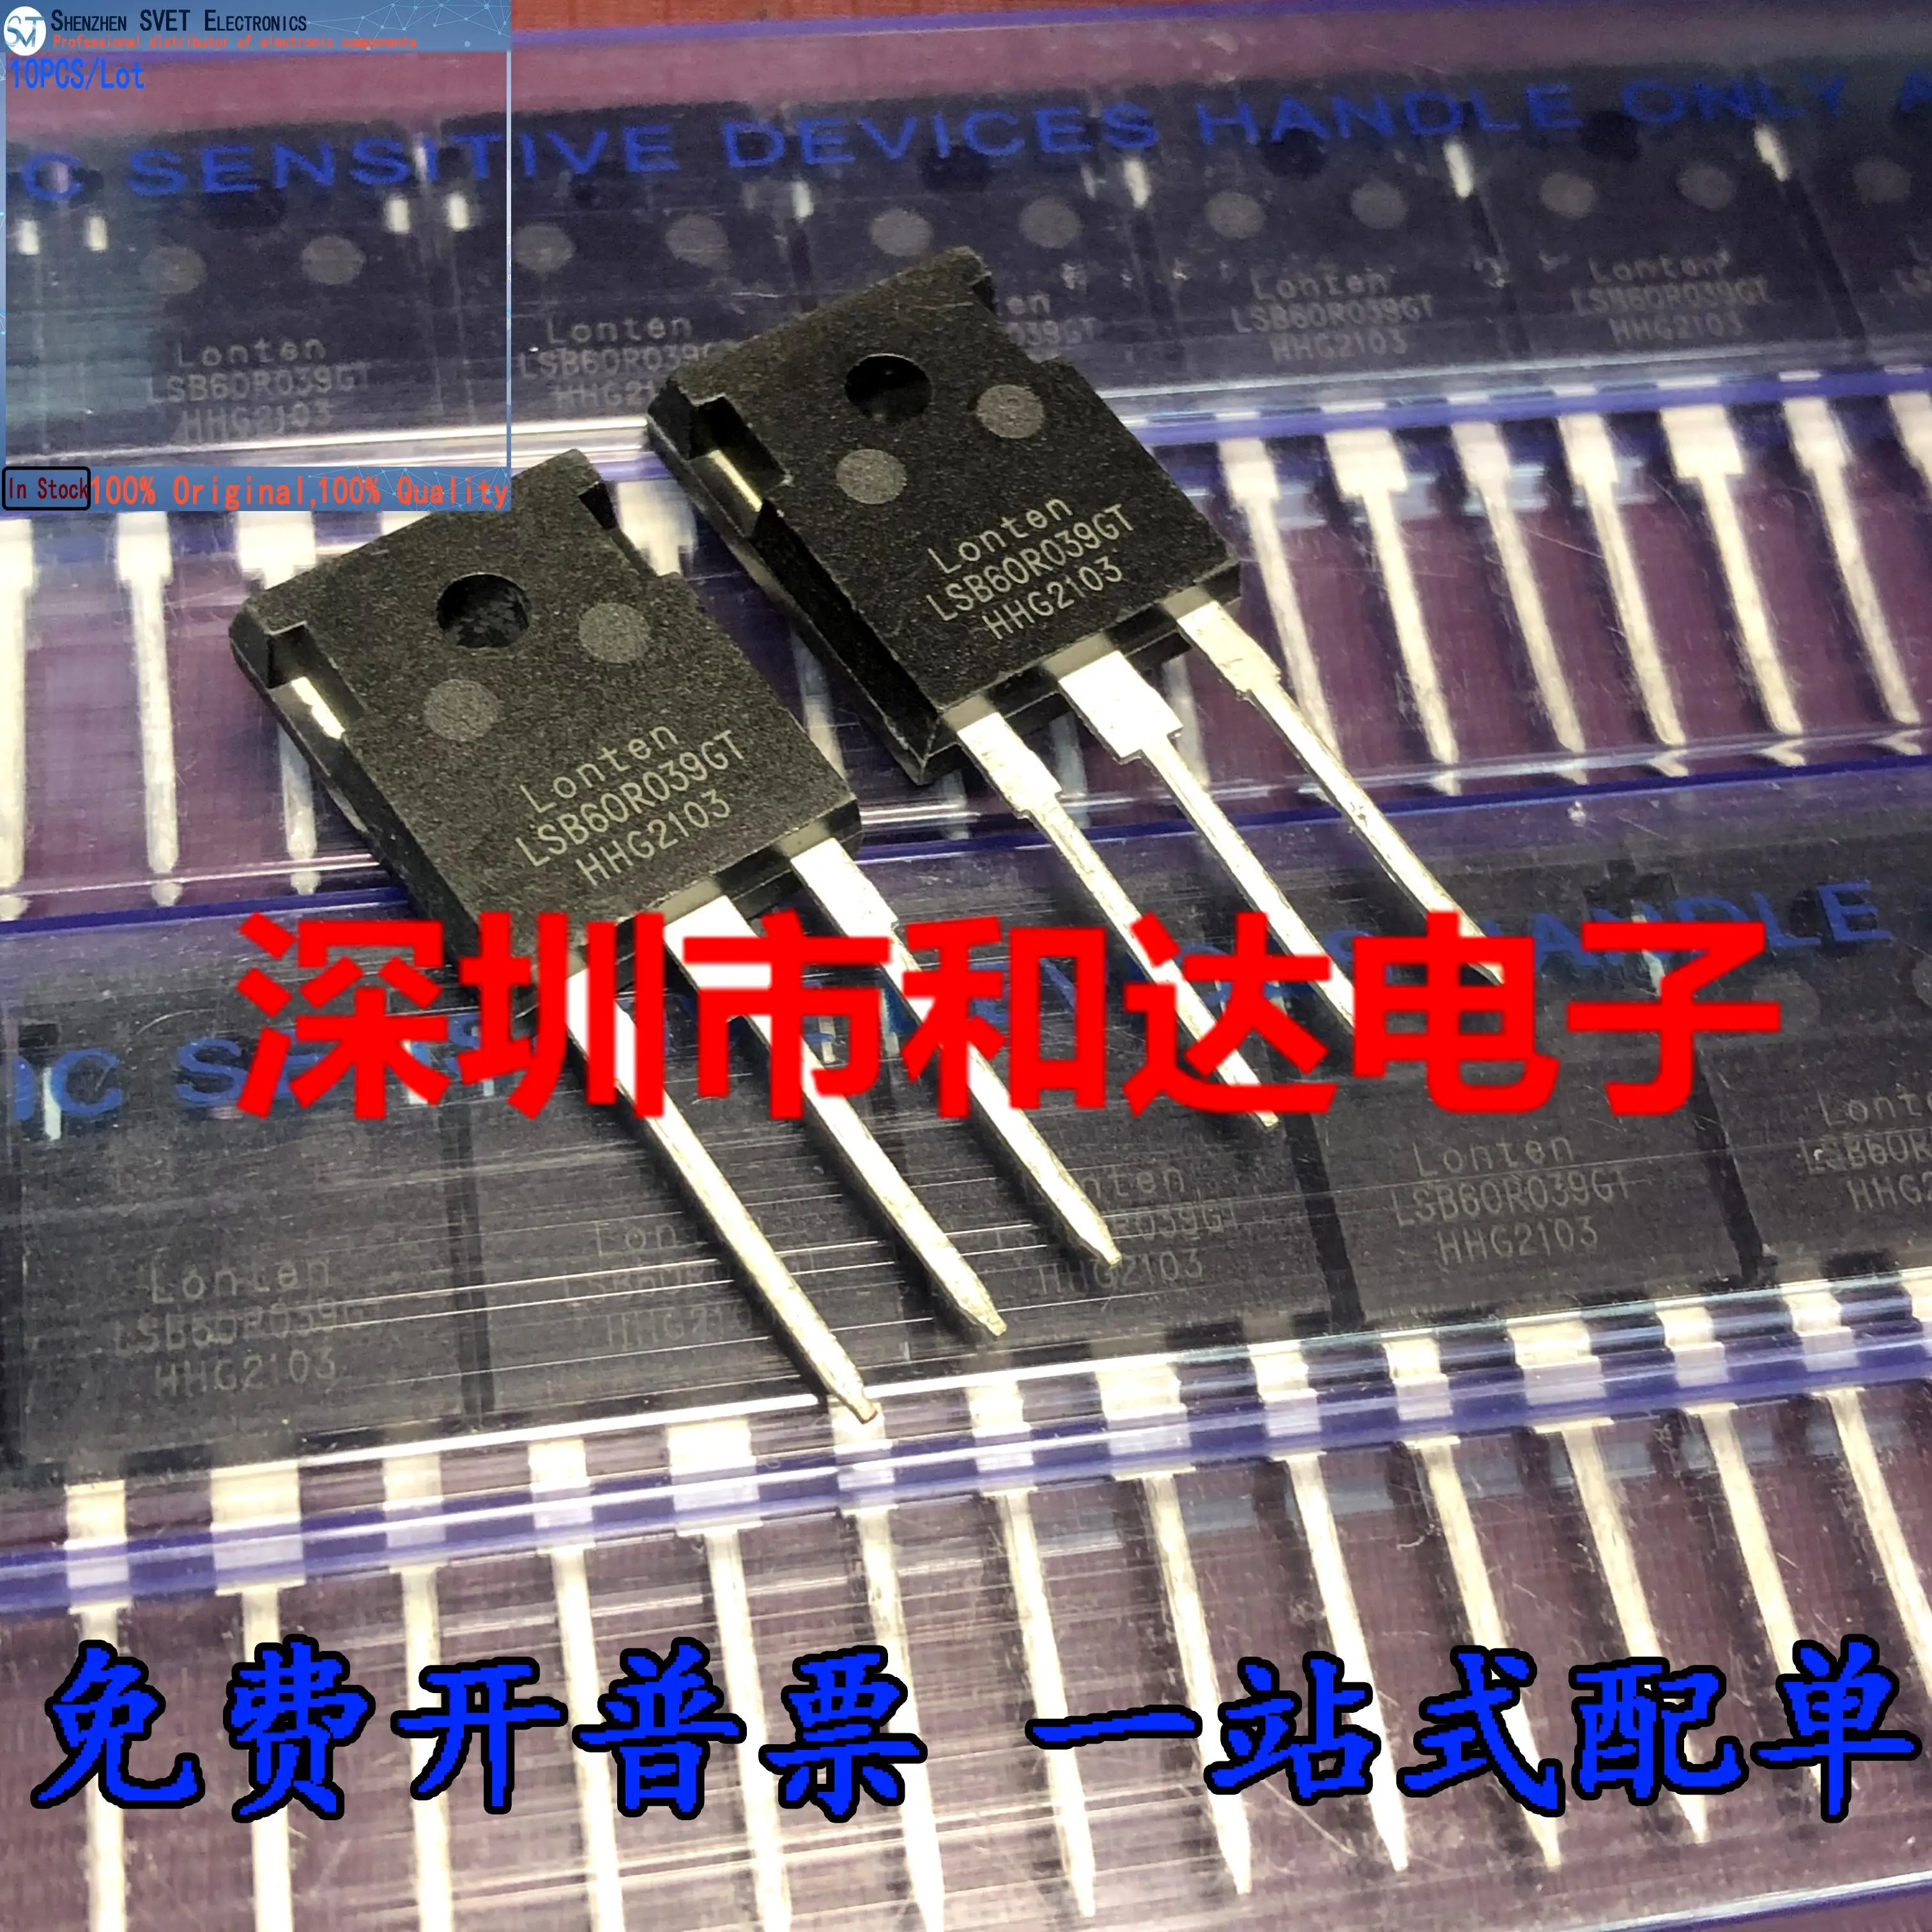 

10 шт./лот LSB60R039GT TO-247 80A 600V N (MOSFET) Импортированные оригинальные Фотообои